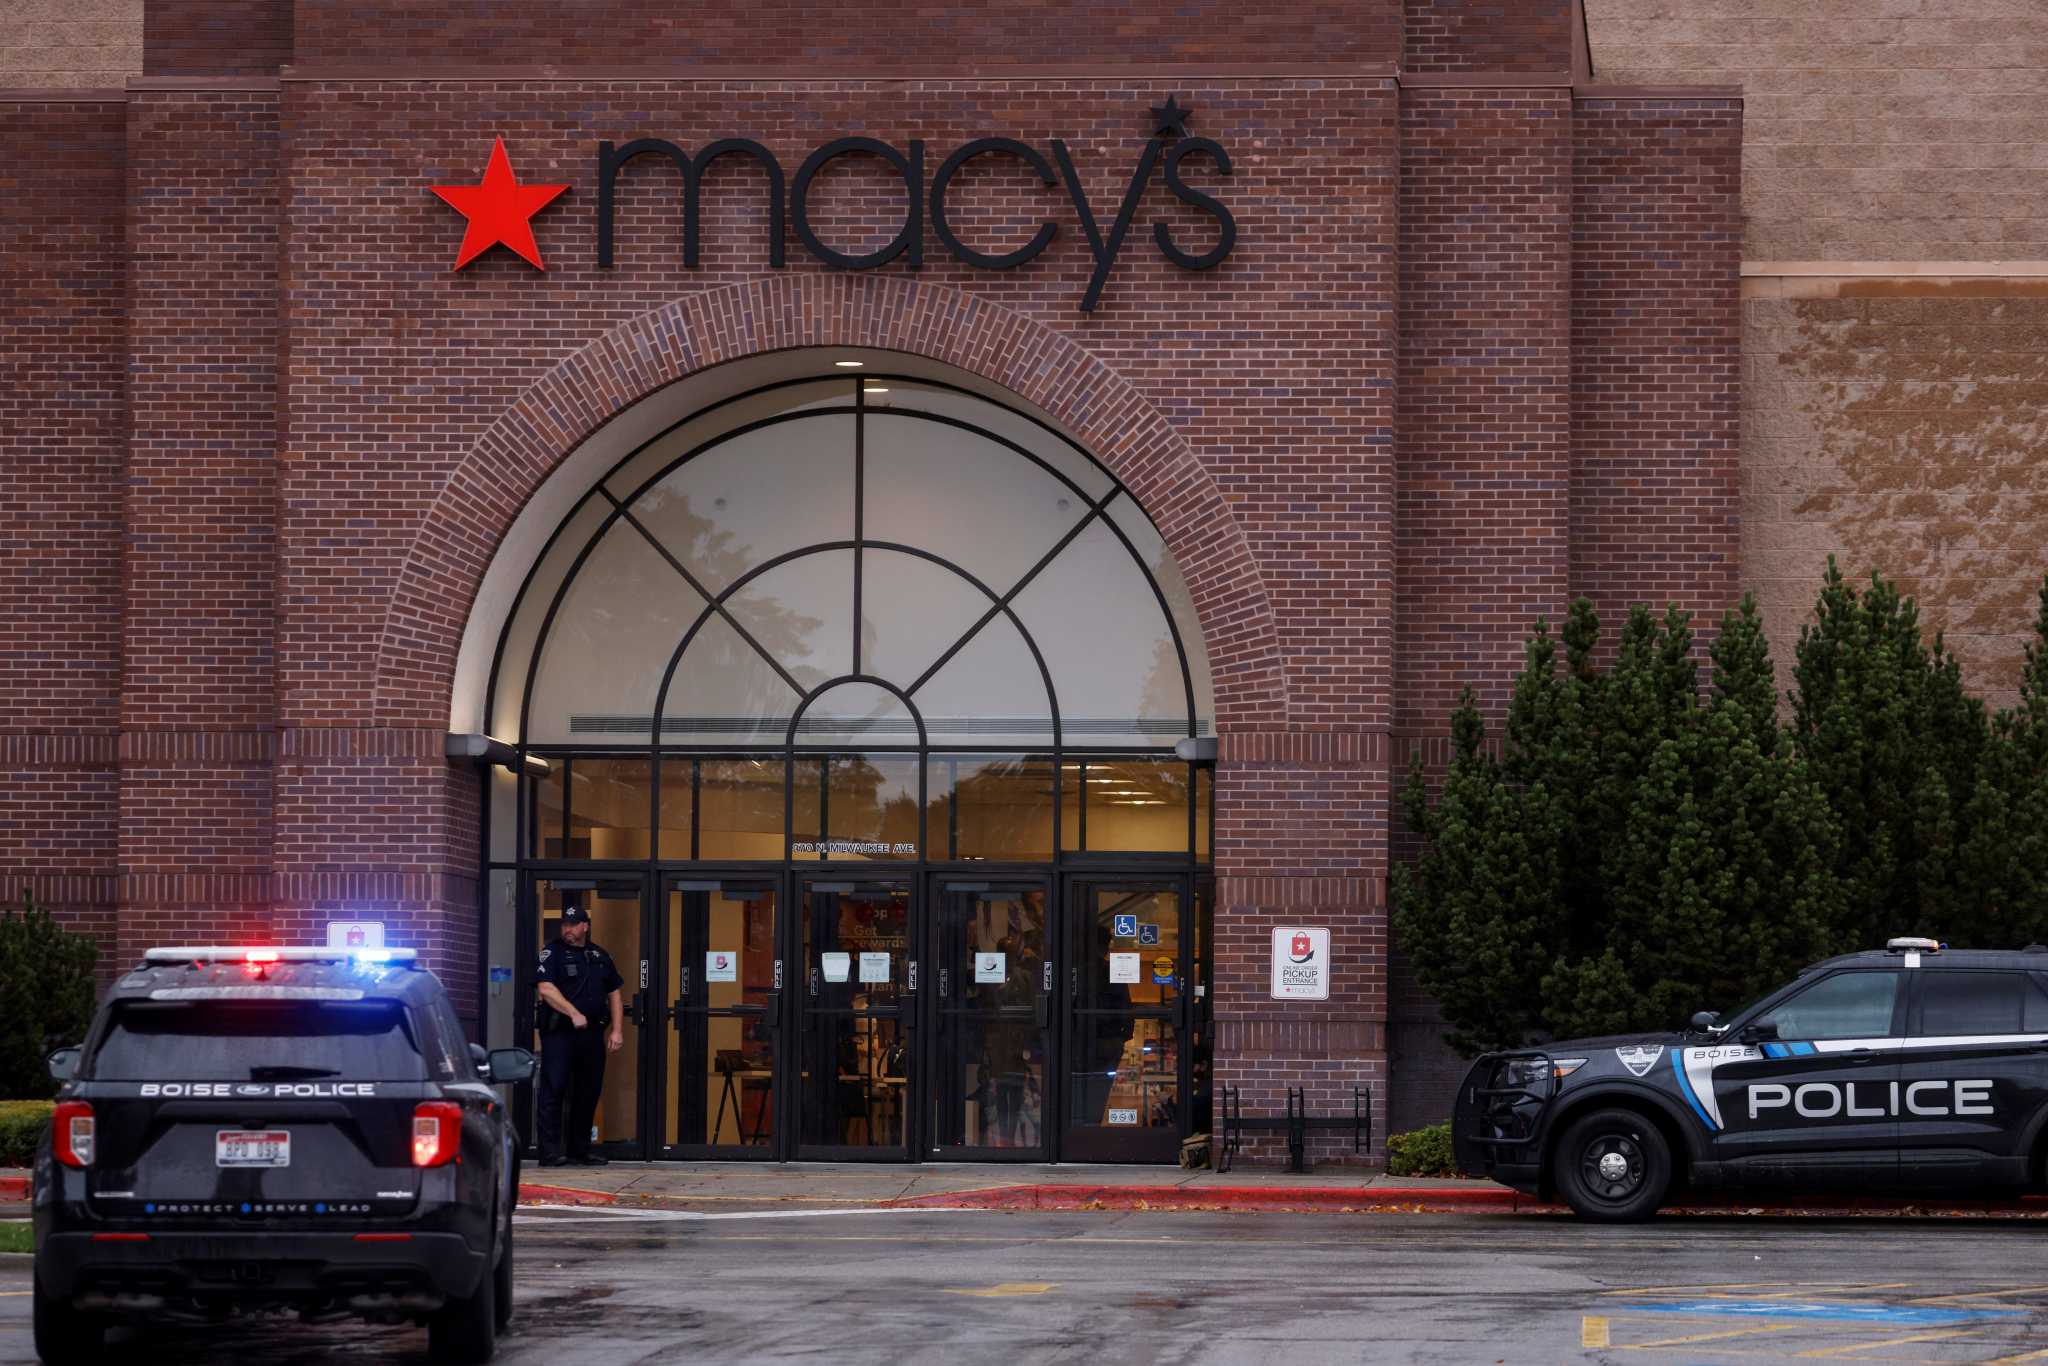 ΗΠΑ: Πυροβολισμοί σε εμπορικό κέντρο στην Μπόιζ – 2 νεκροί και 4 τραυματίες